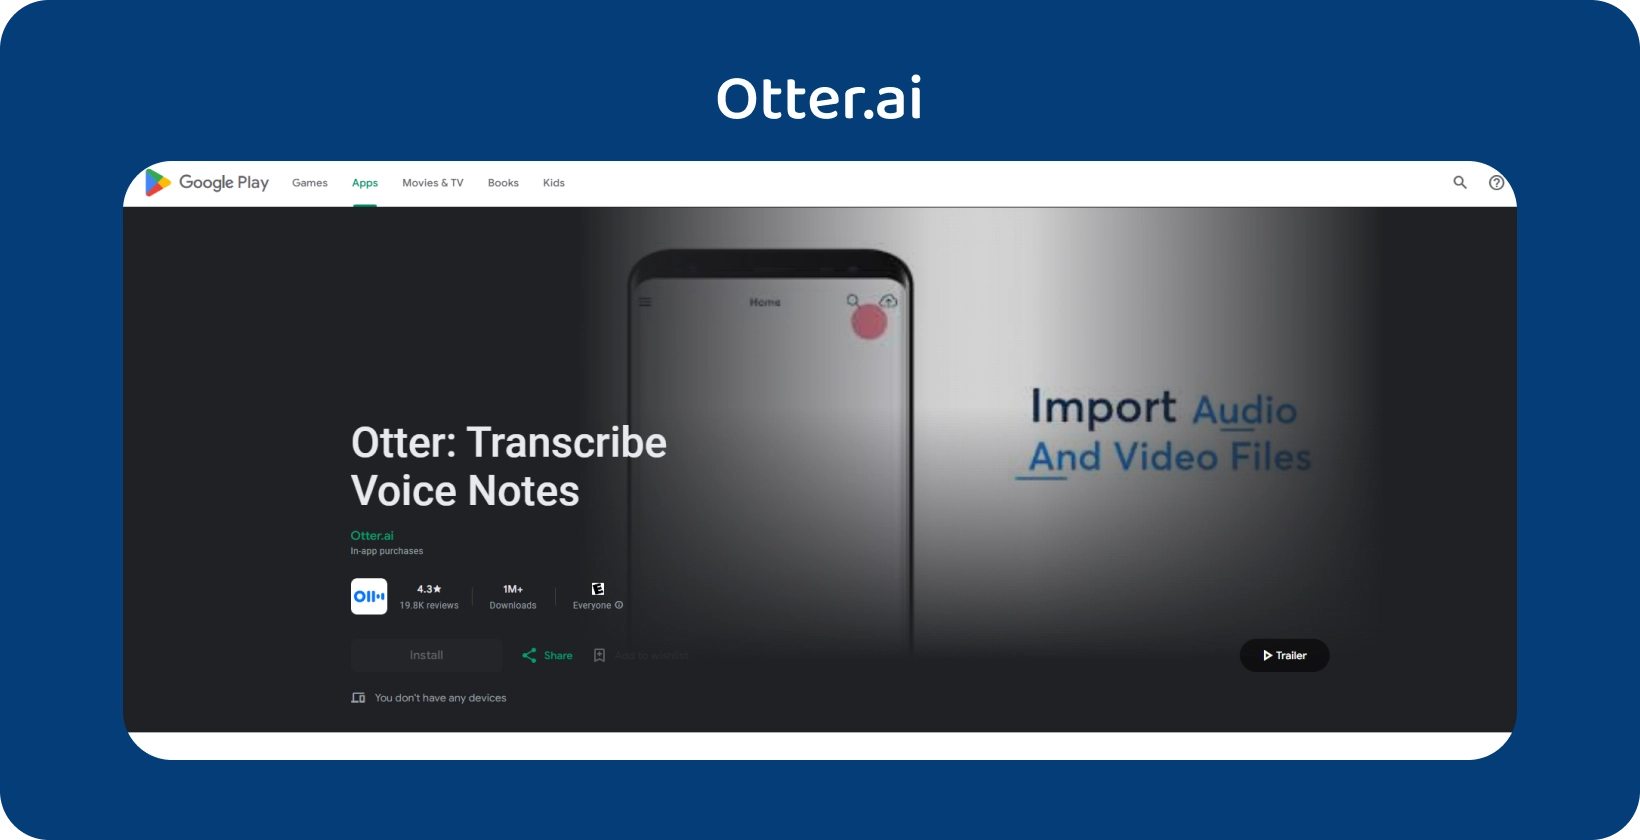 Otter.ai Google Play rakendus, mis sisaldab häälmärkmete transkriptsiooni ja heli-/videofailide importimise võimalusi.